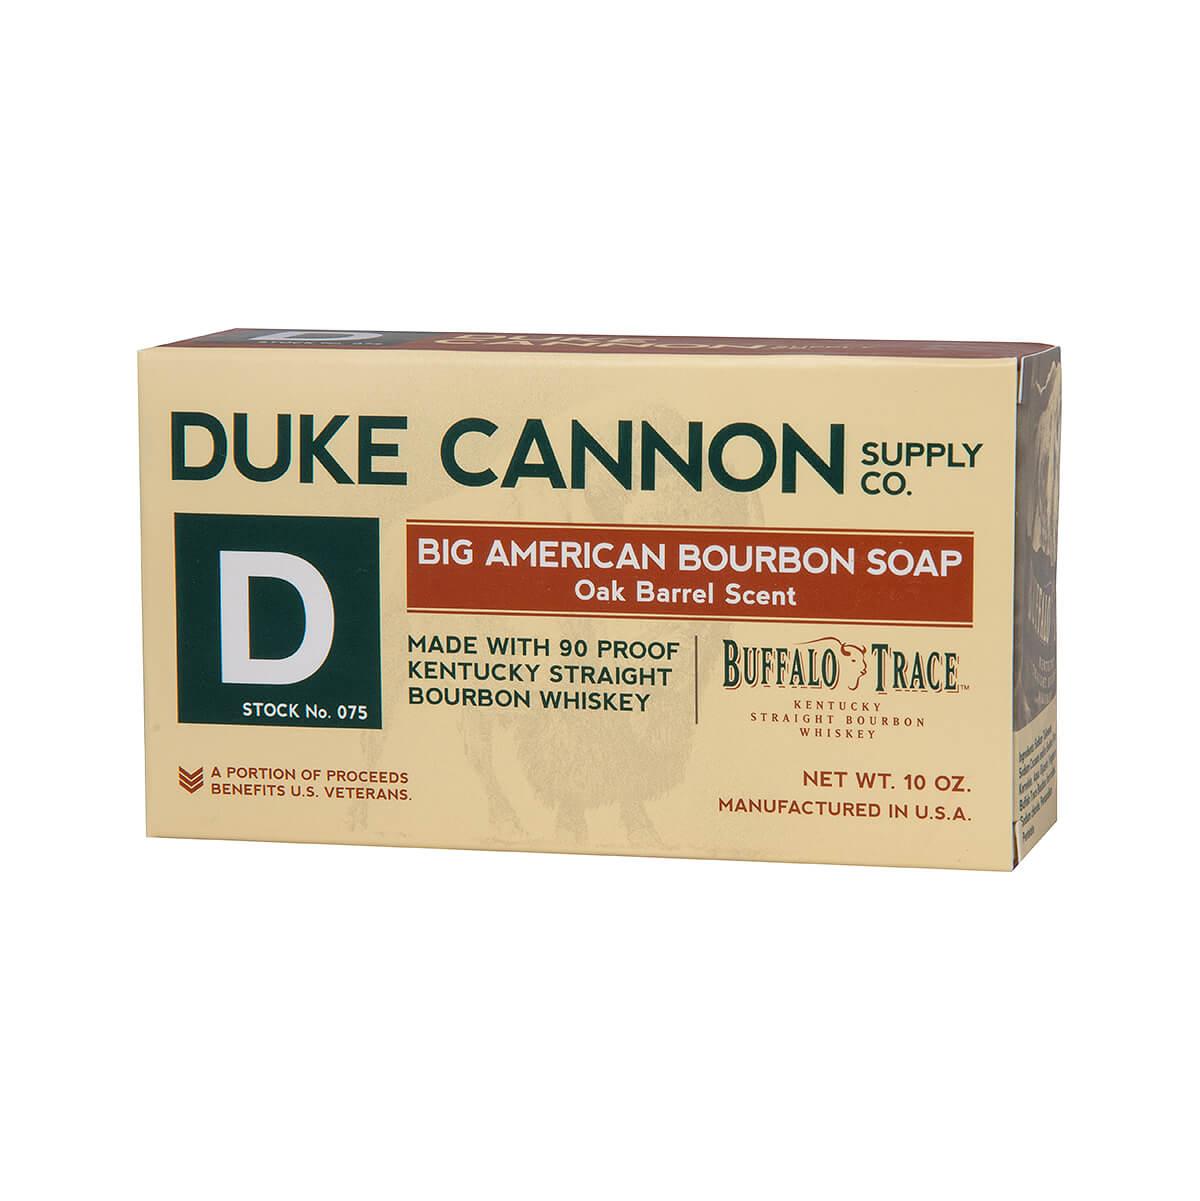  Big American Bourbon Soap